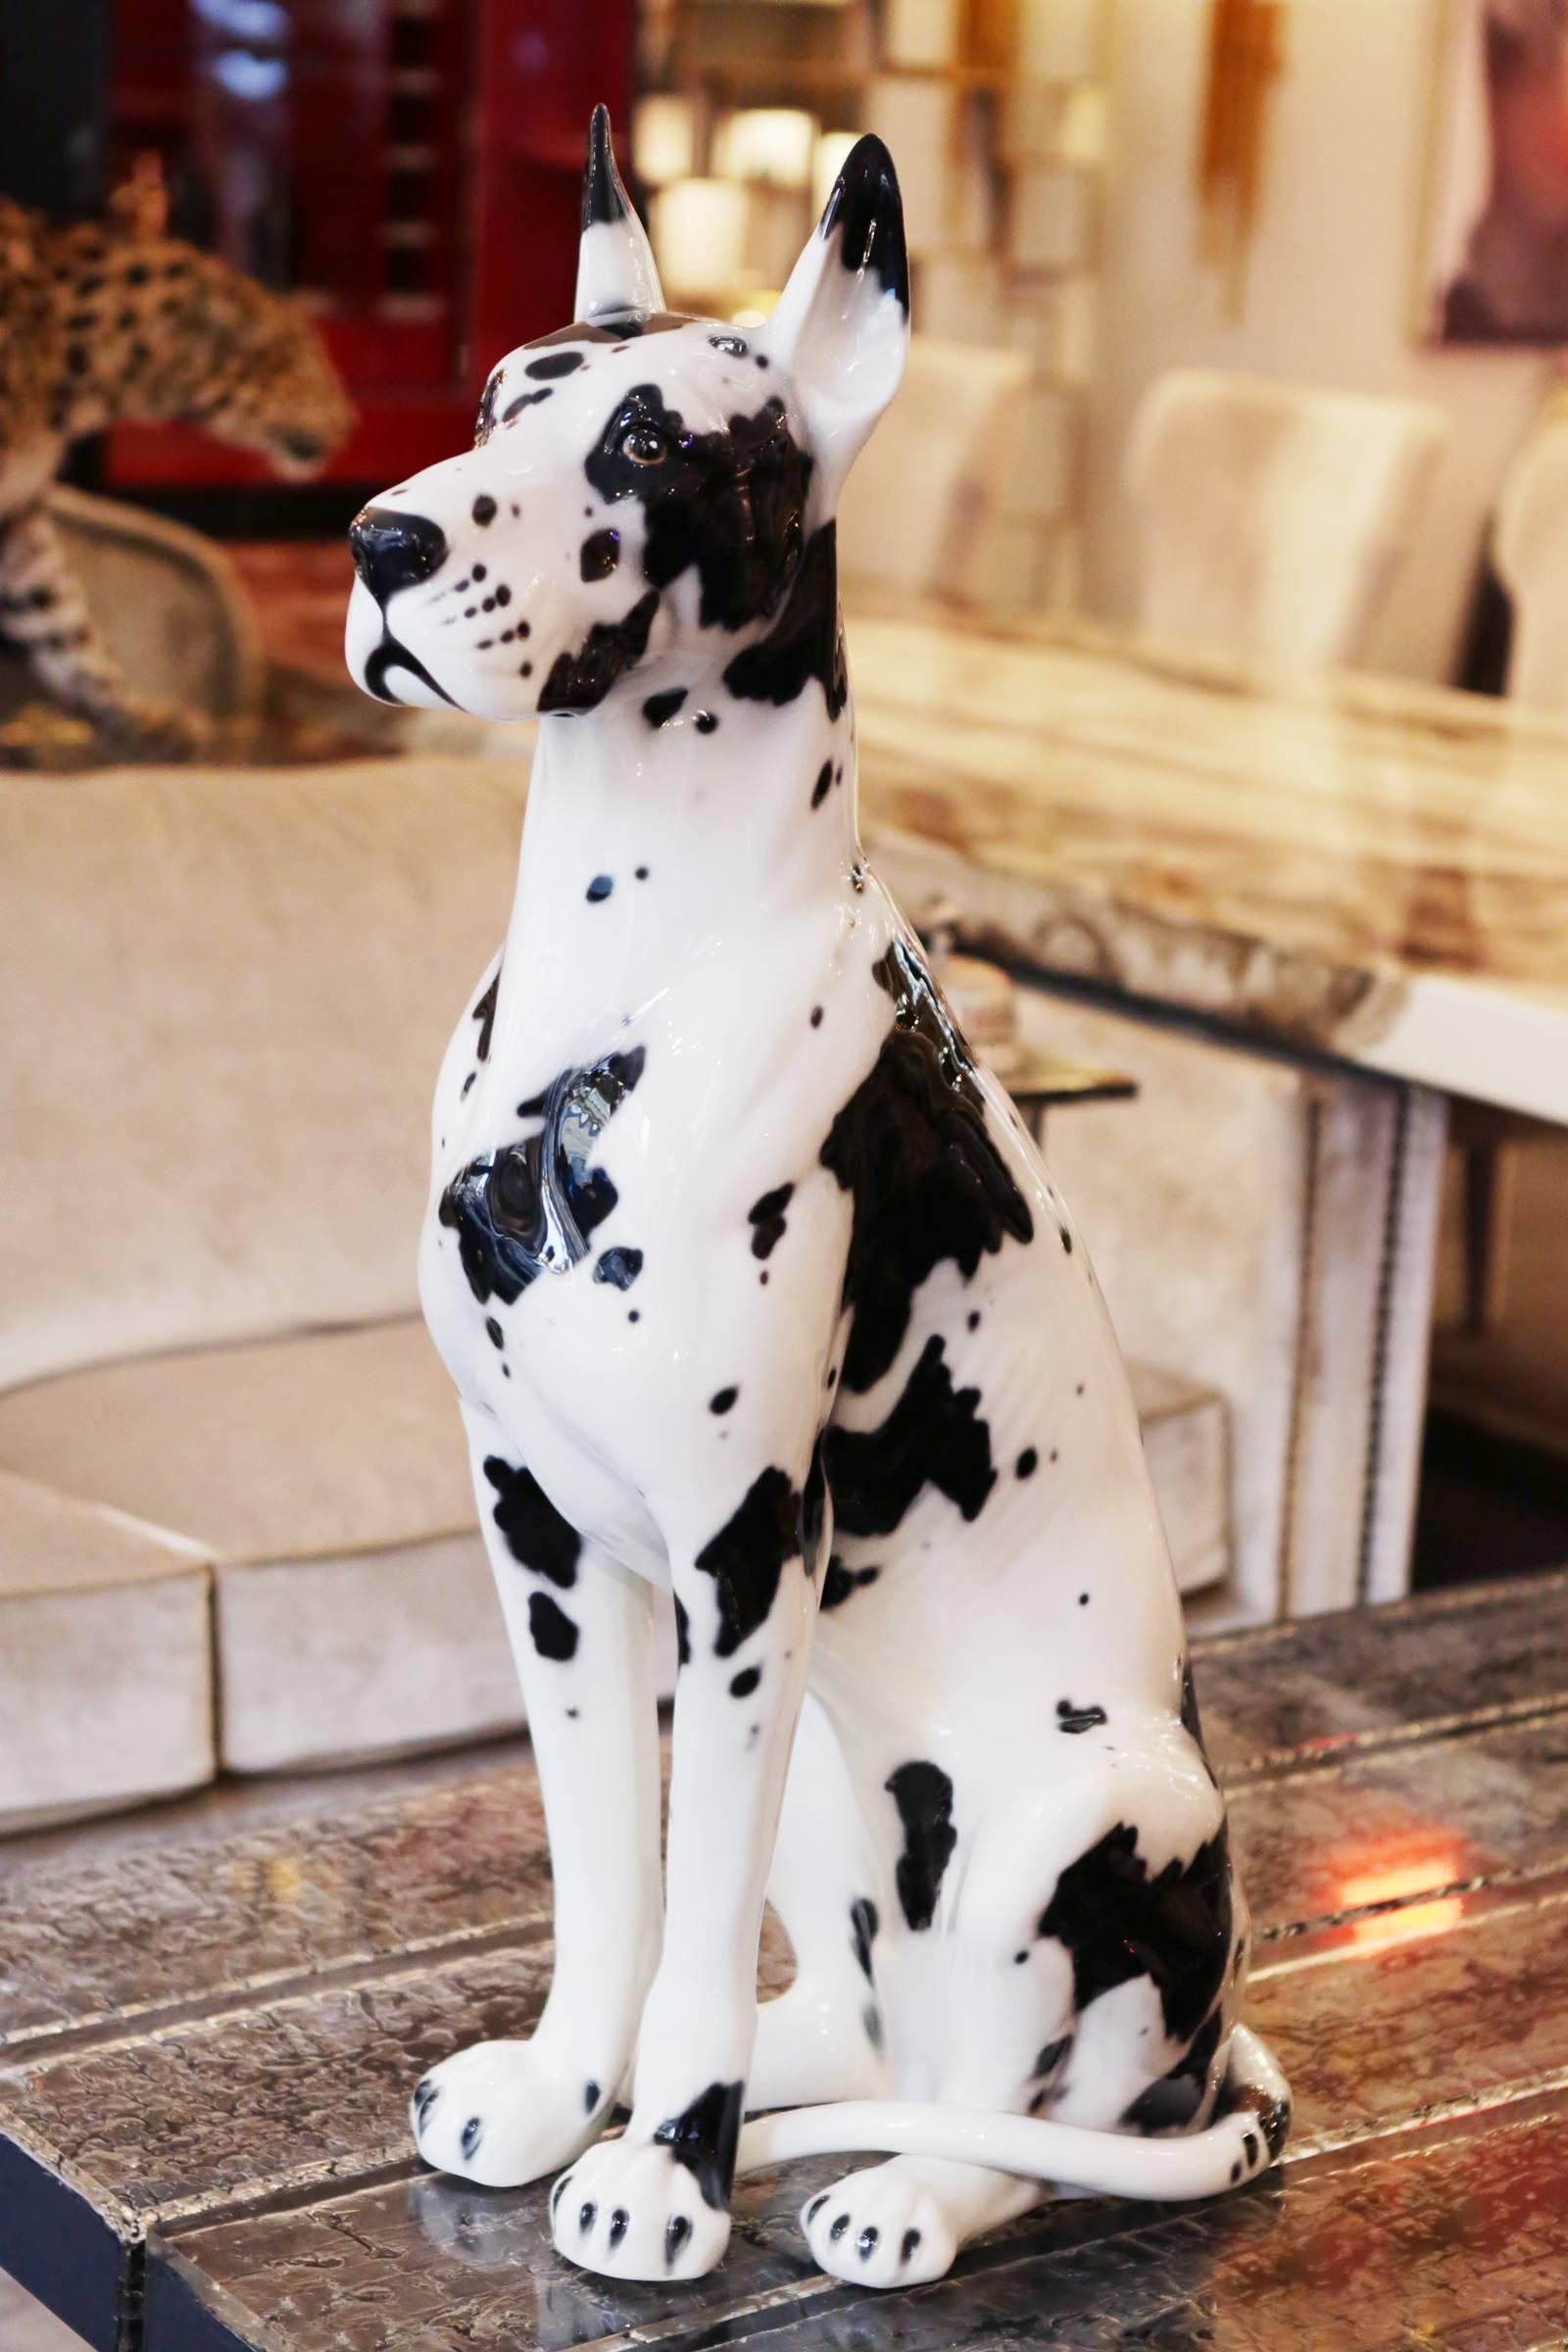 Sculpture Danish dog in hand-painted ceramic.